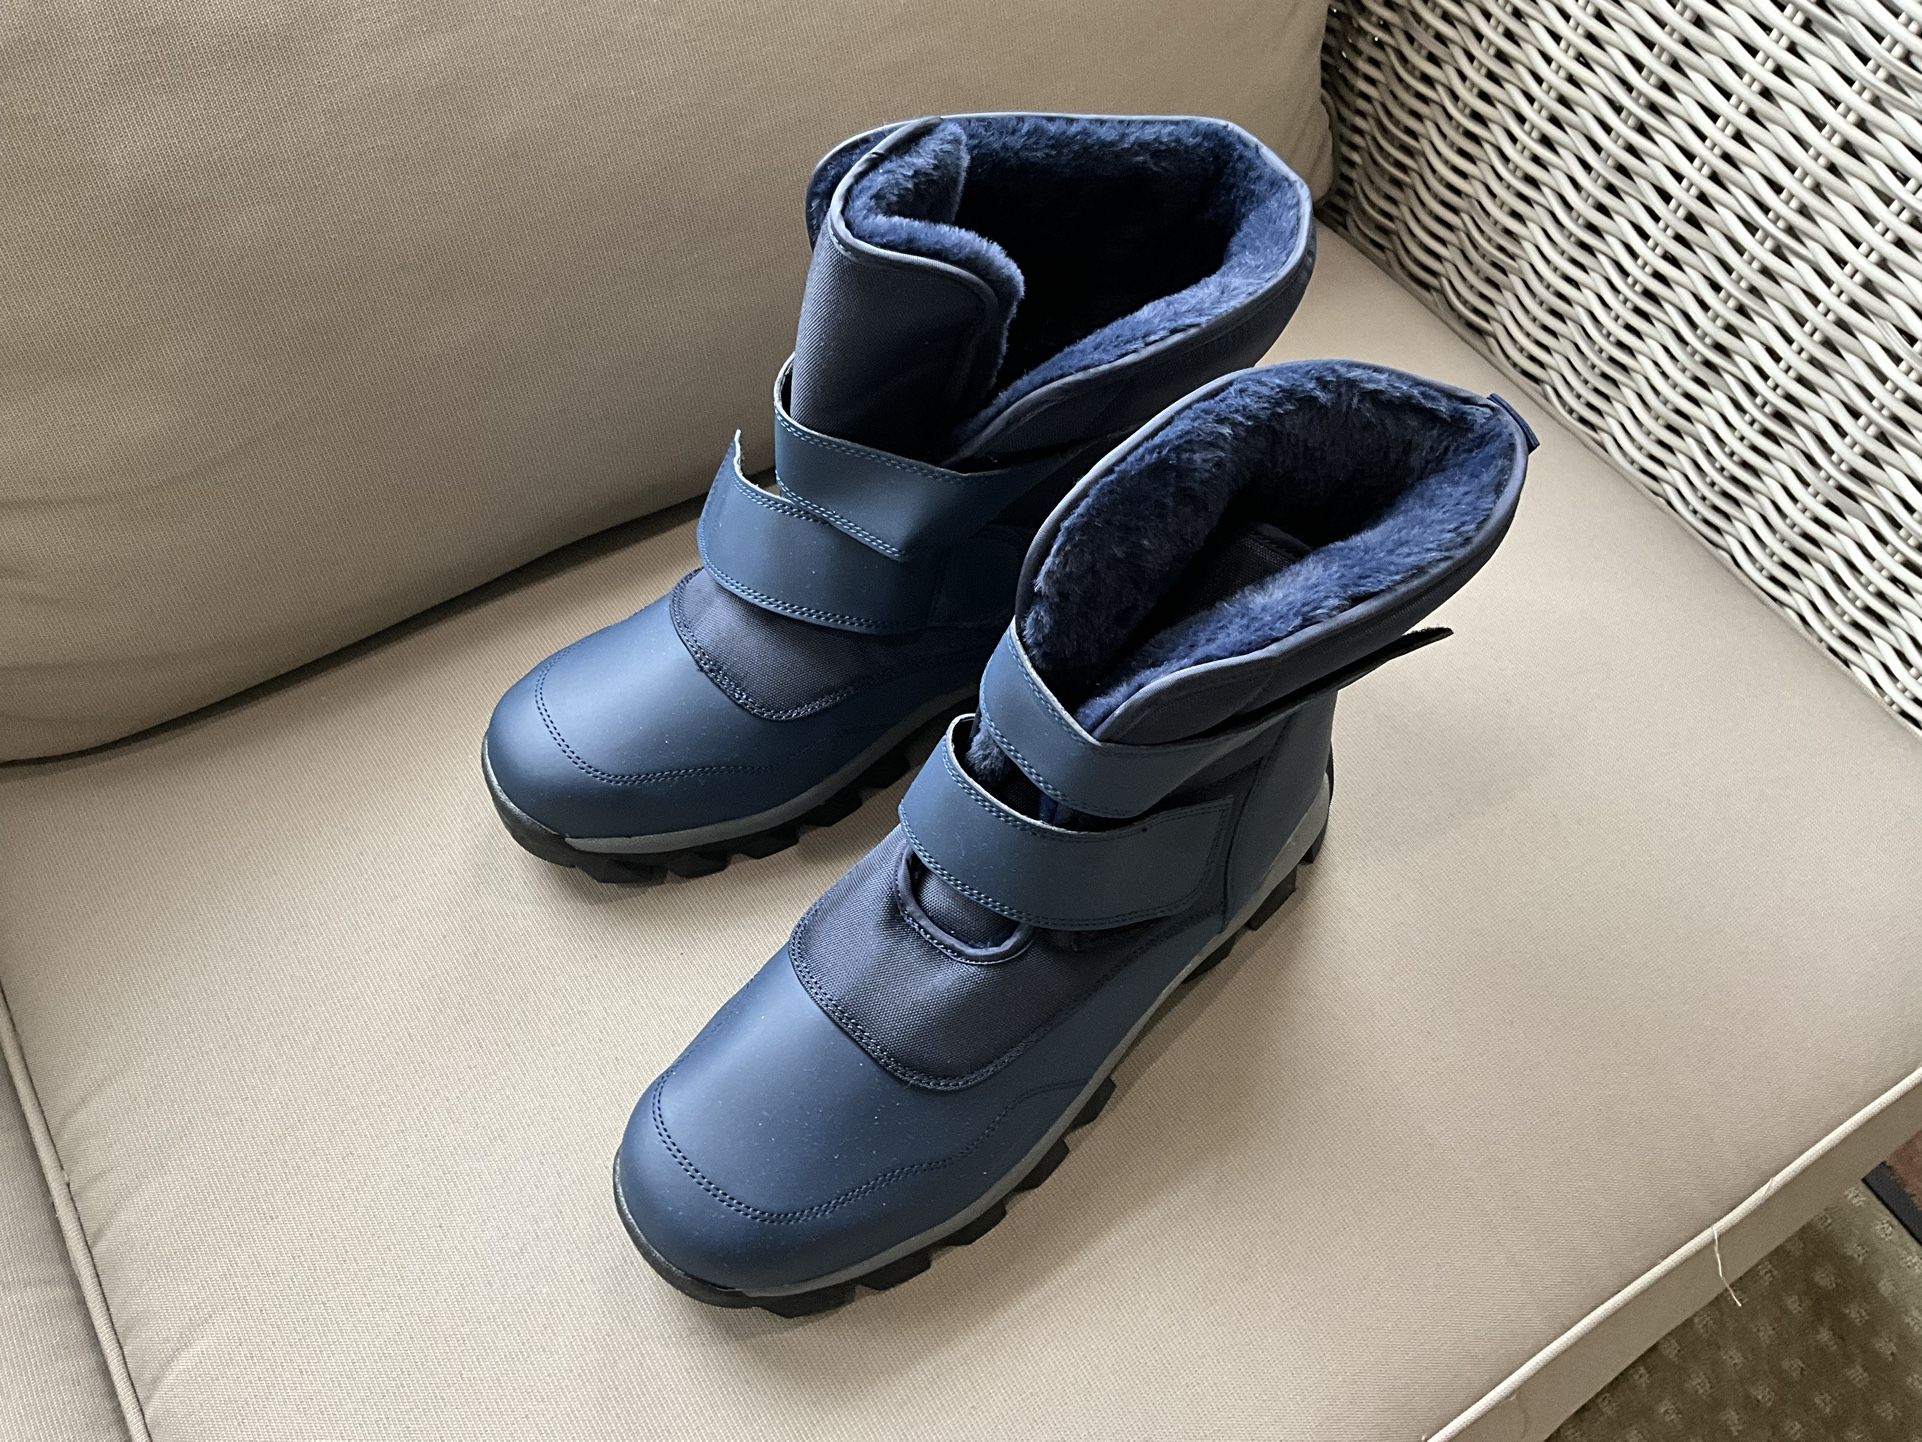  Sanossi Men's Snow Boots Waterproof Winter Warm Non-Slip Outdoor Boots Men's 9 1/2  NEW